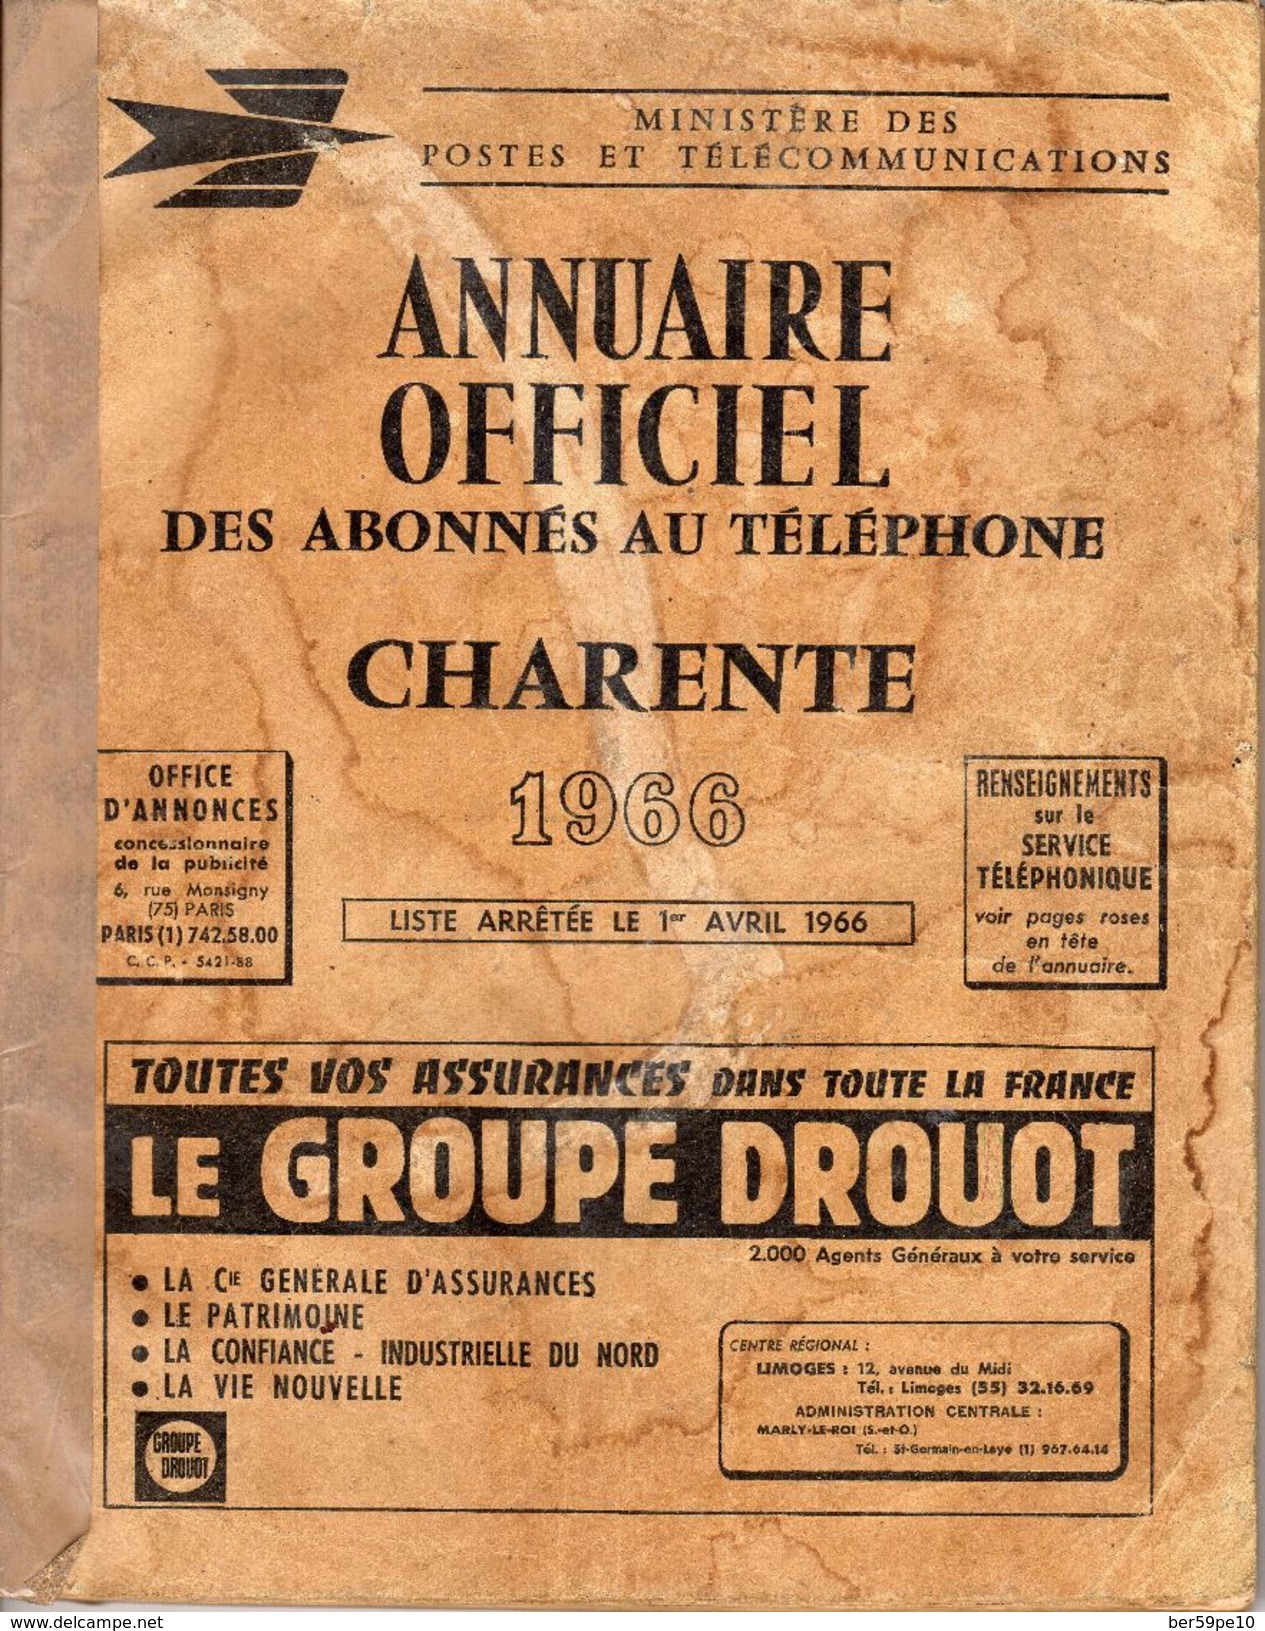 ANNUAIRE OFFICIEL CHARENTE 1966 DES ABONNES AU TELEPHONE - Annuaires Téléphoniques